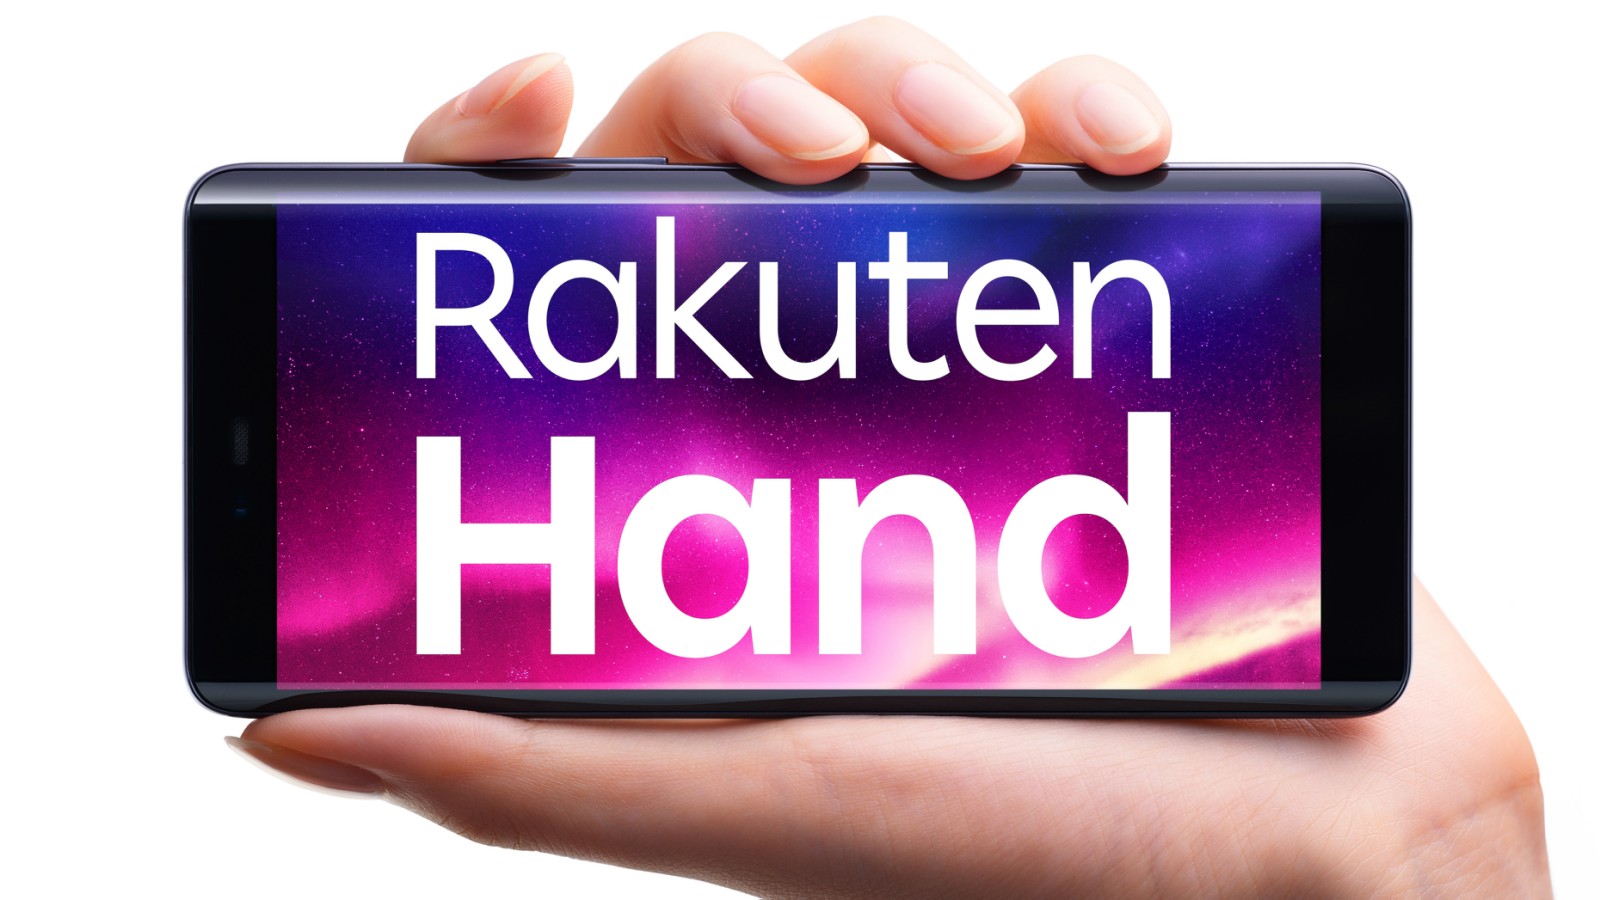 New Original Smartphone Rakuten Hand Released Today | Press Releases